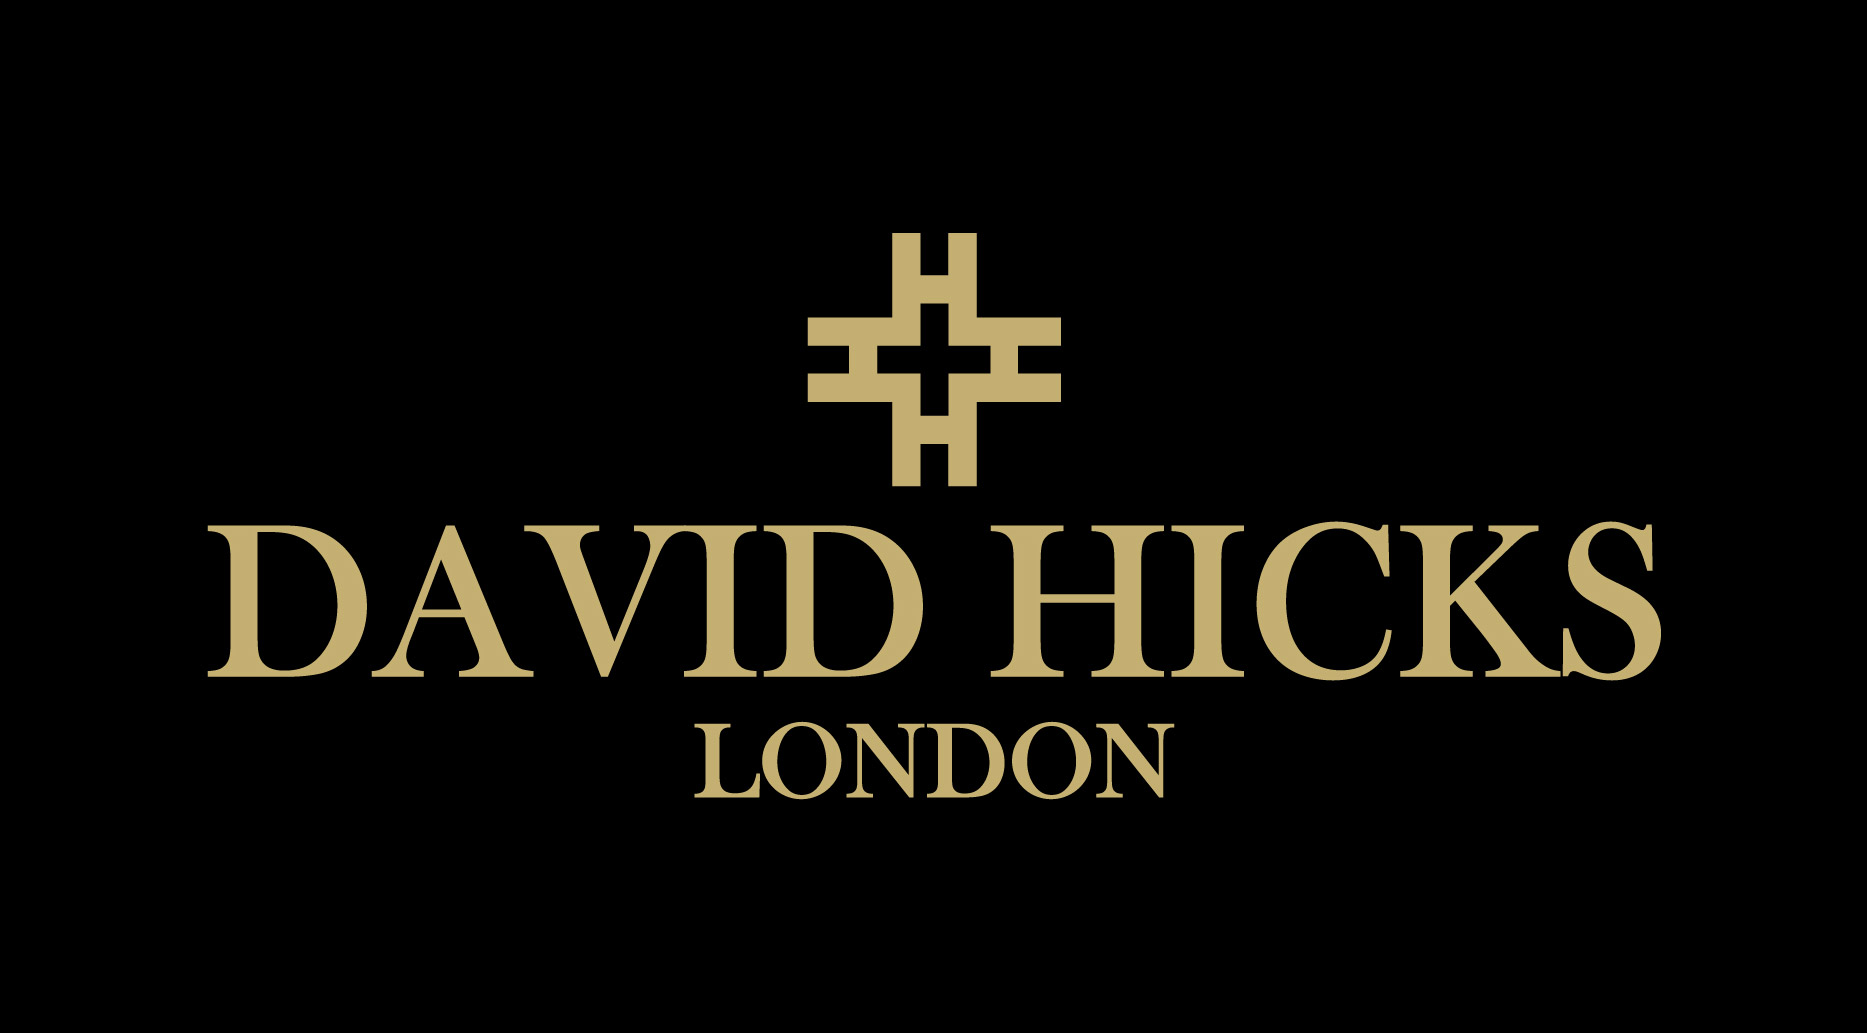 DAVID HICKS